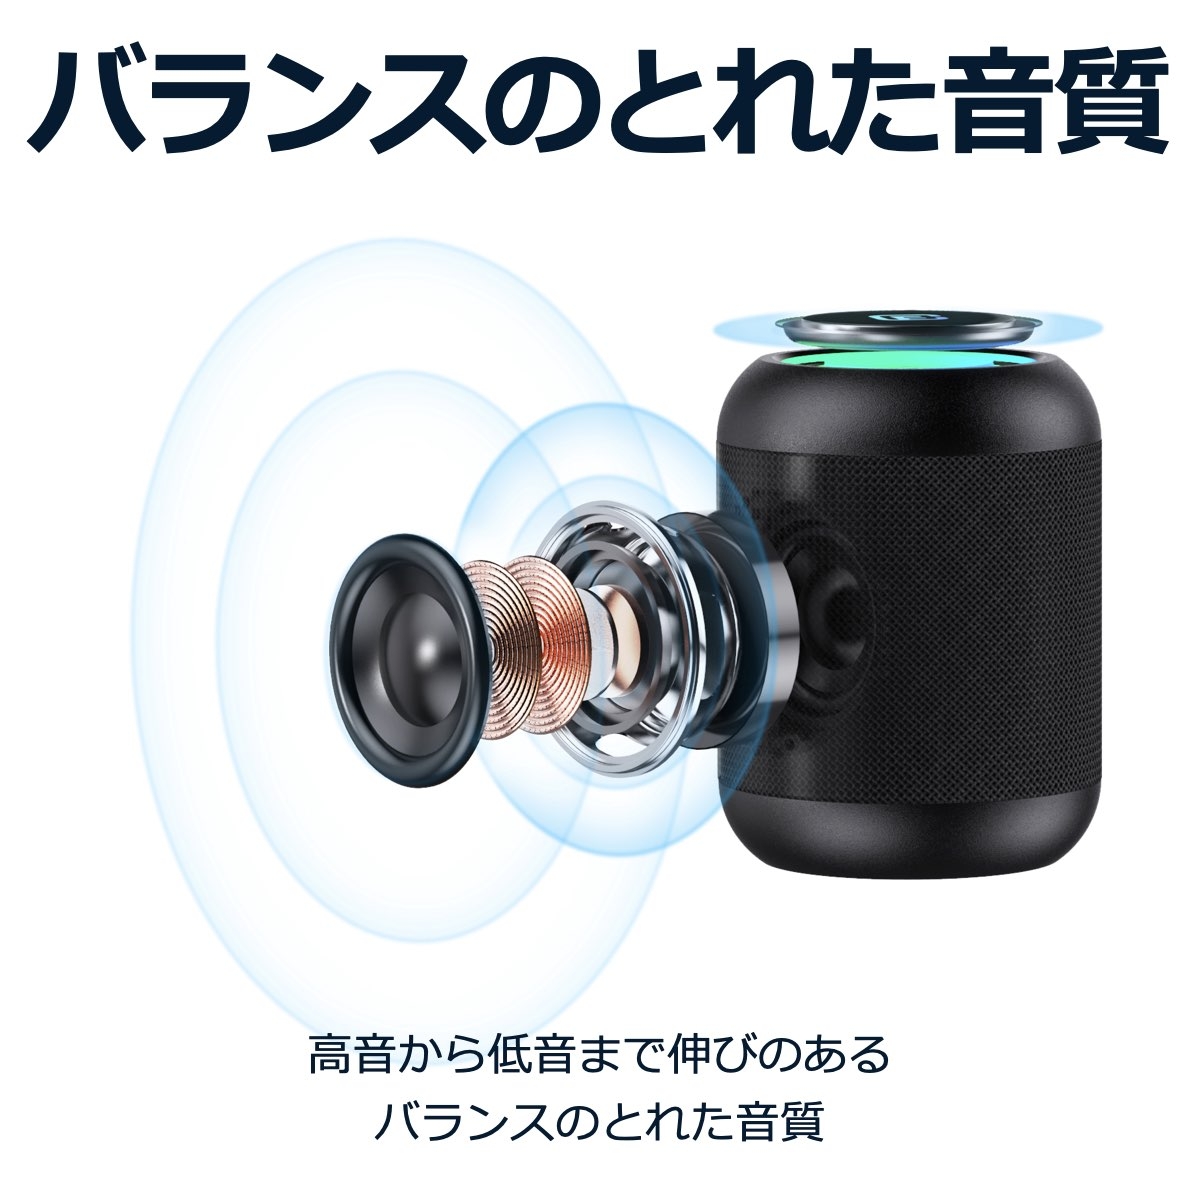 2台セット〉コンパクト 防水防塵対応 Bluetooth スピーカー | Giftpad 